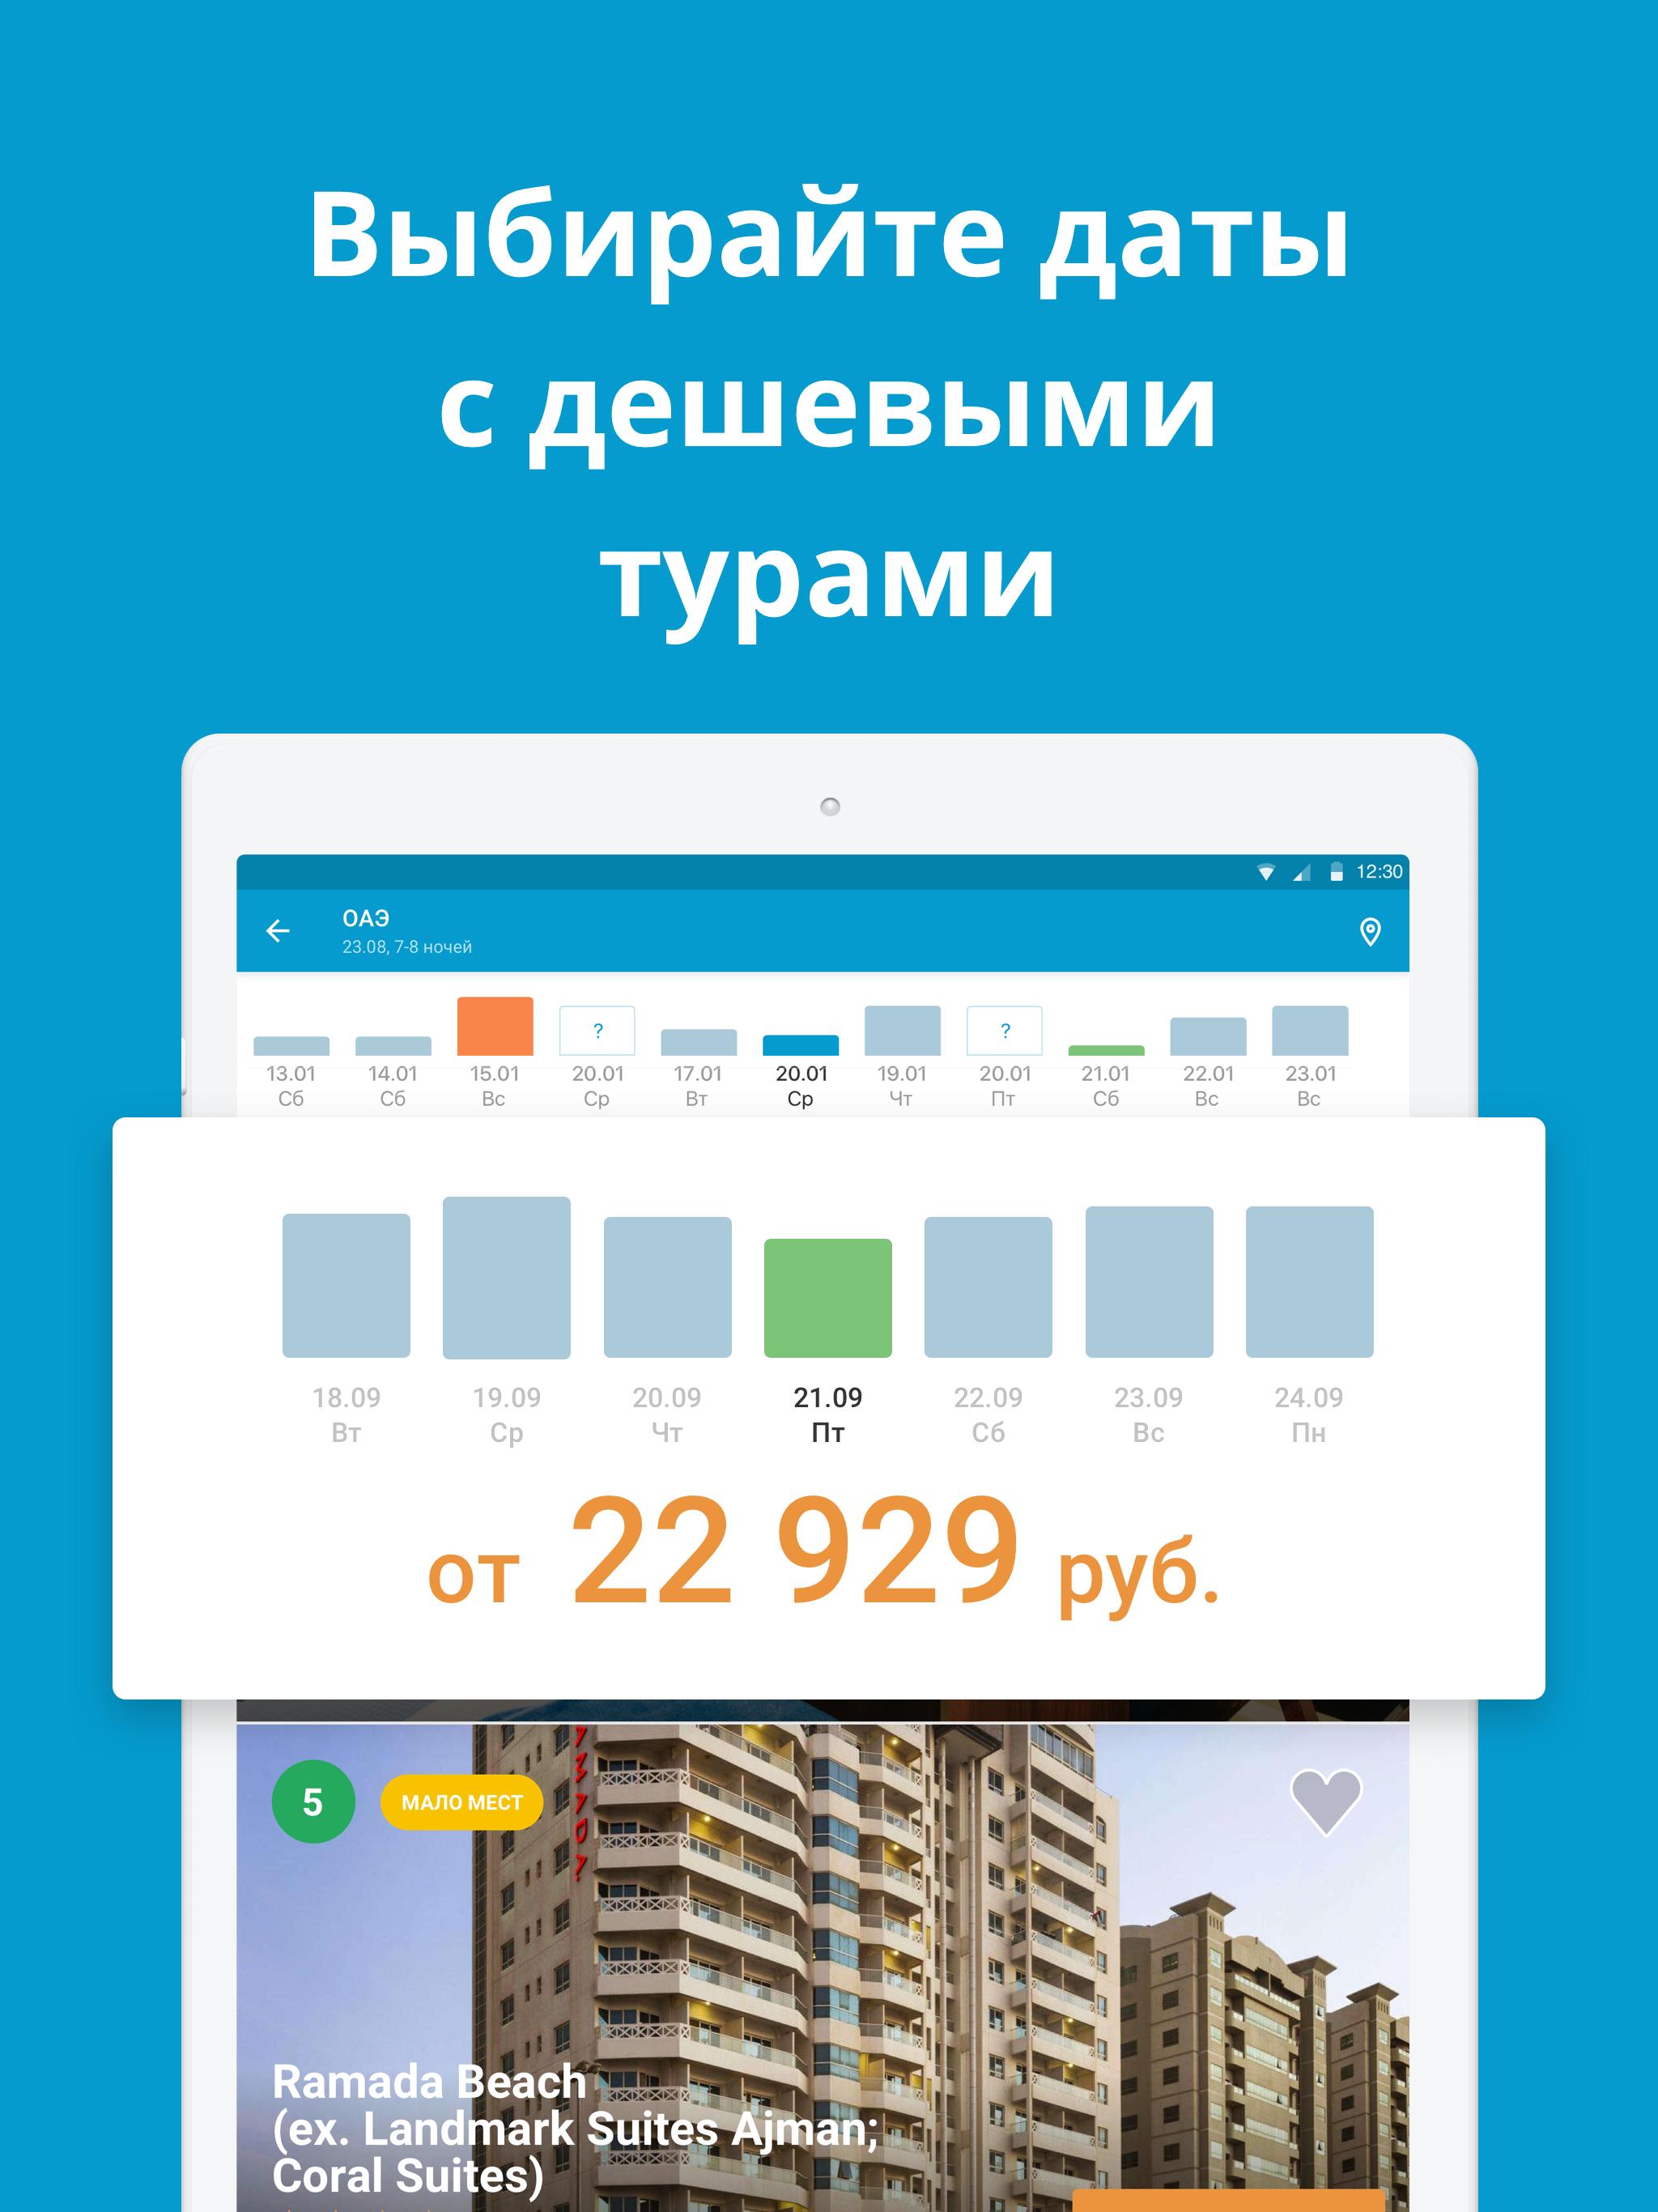 Travelata.ru Все горящие туры и путевки онлайн 3.6.7 Screenshot 9